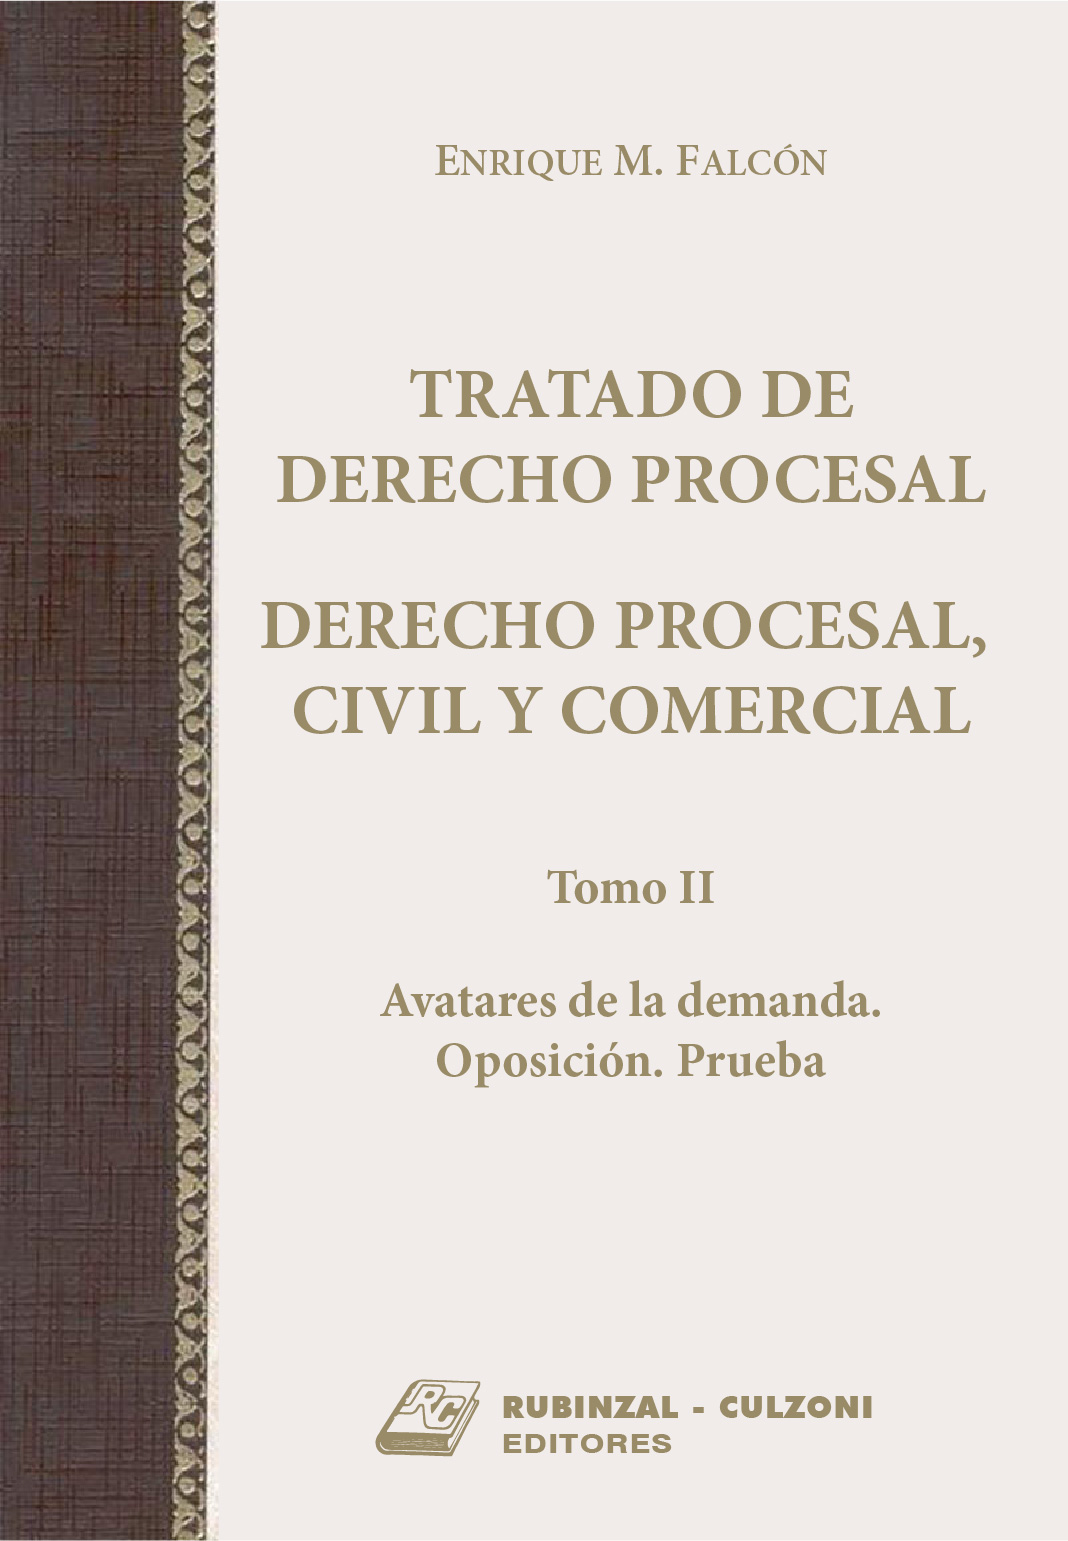 Tratado de Derecho Procesal. Derecho Procesal Civil y Comercial. - Tomo II - Avatares de la demanda. Oposición. Prueba